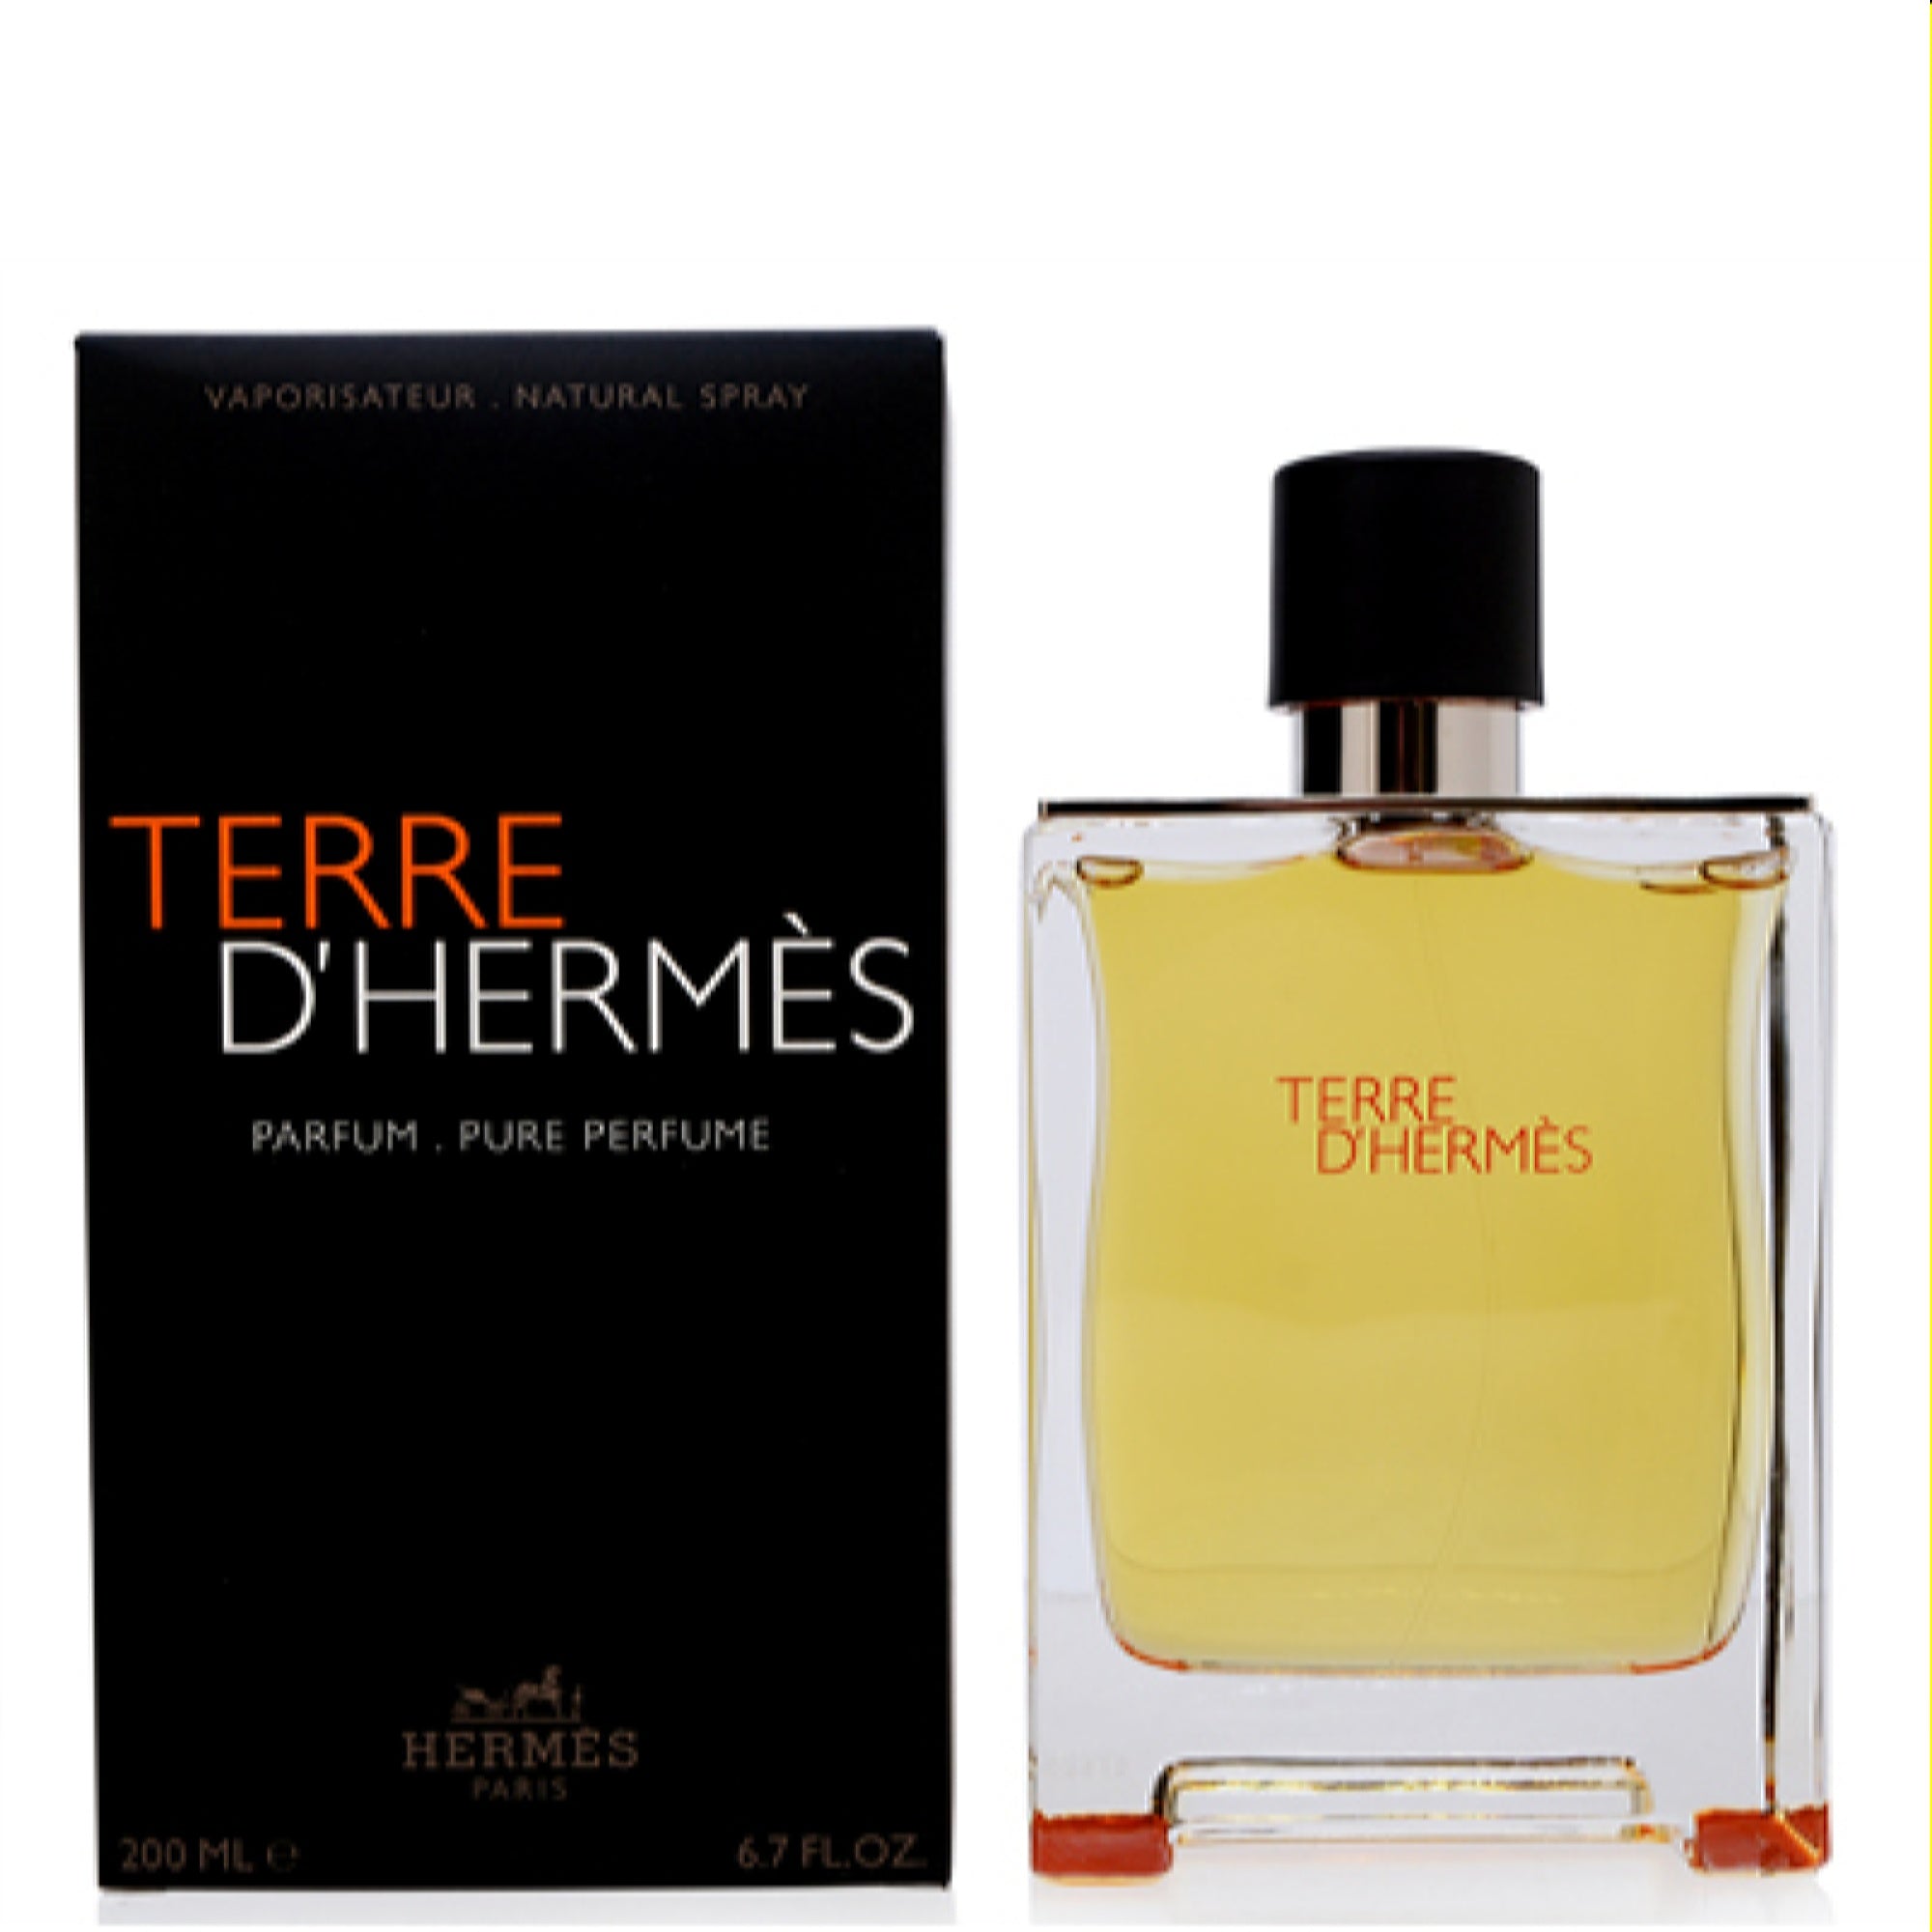 Hermes Men's Terre D'Hermes Hermes Parfum Spray 6.7 Oz (200 Ml)  3346130013501